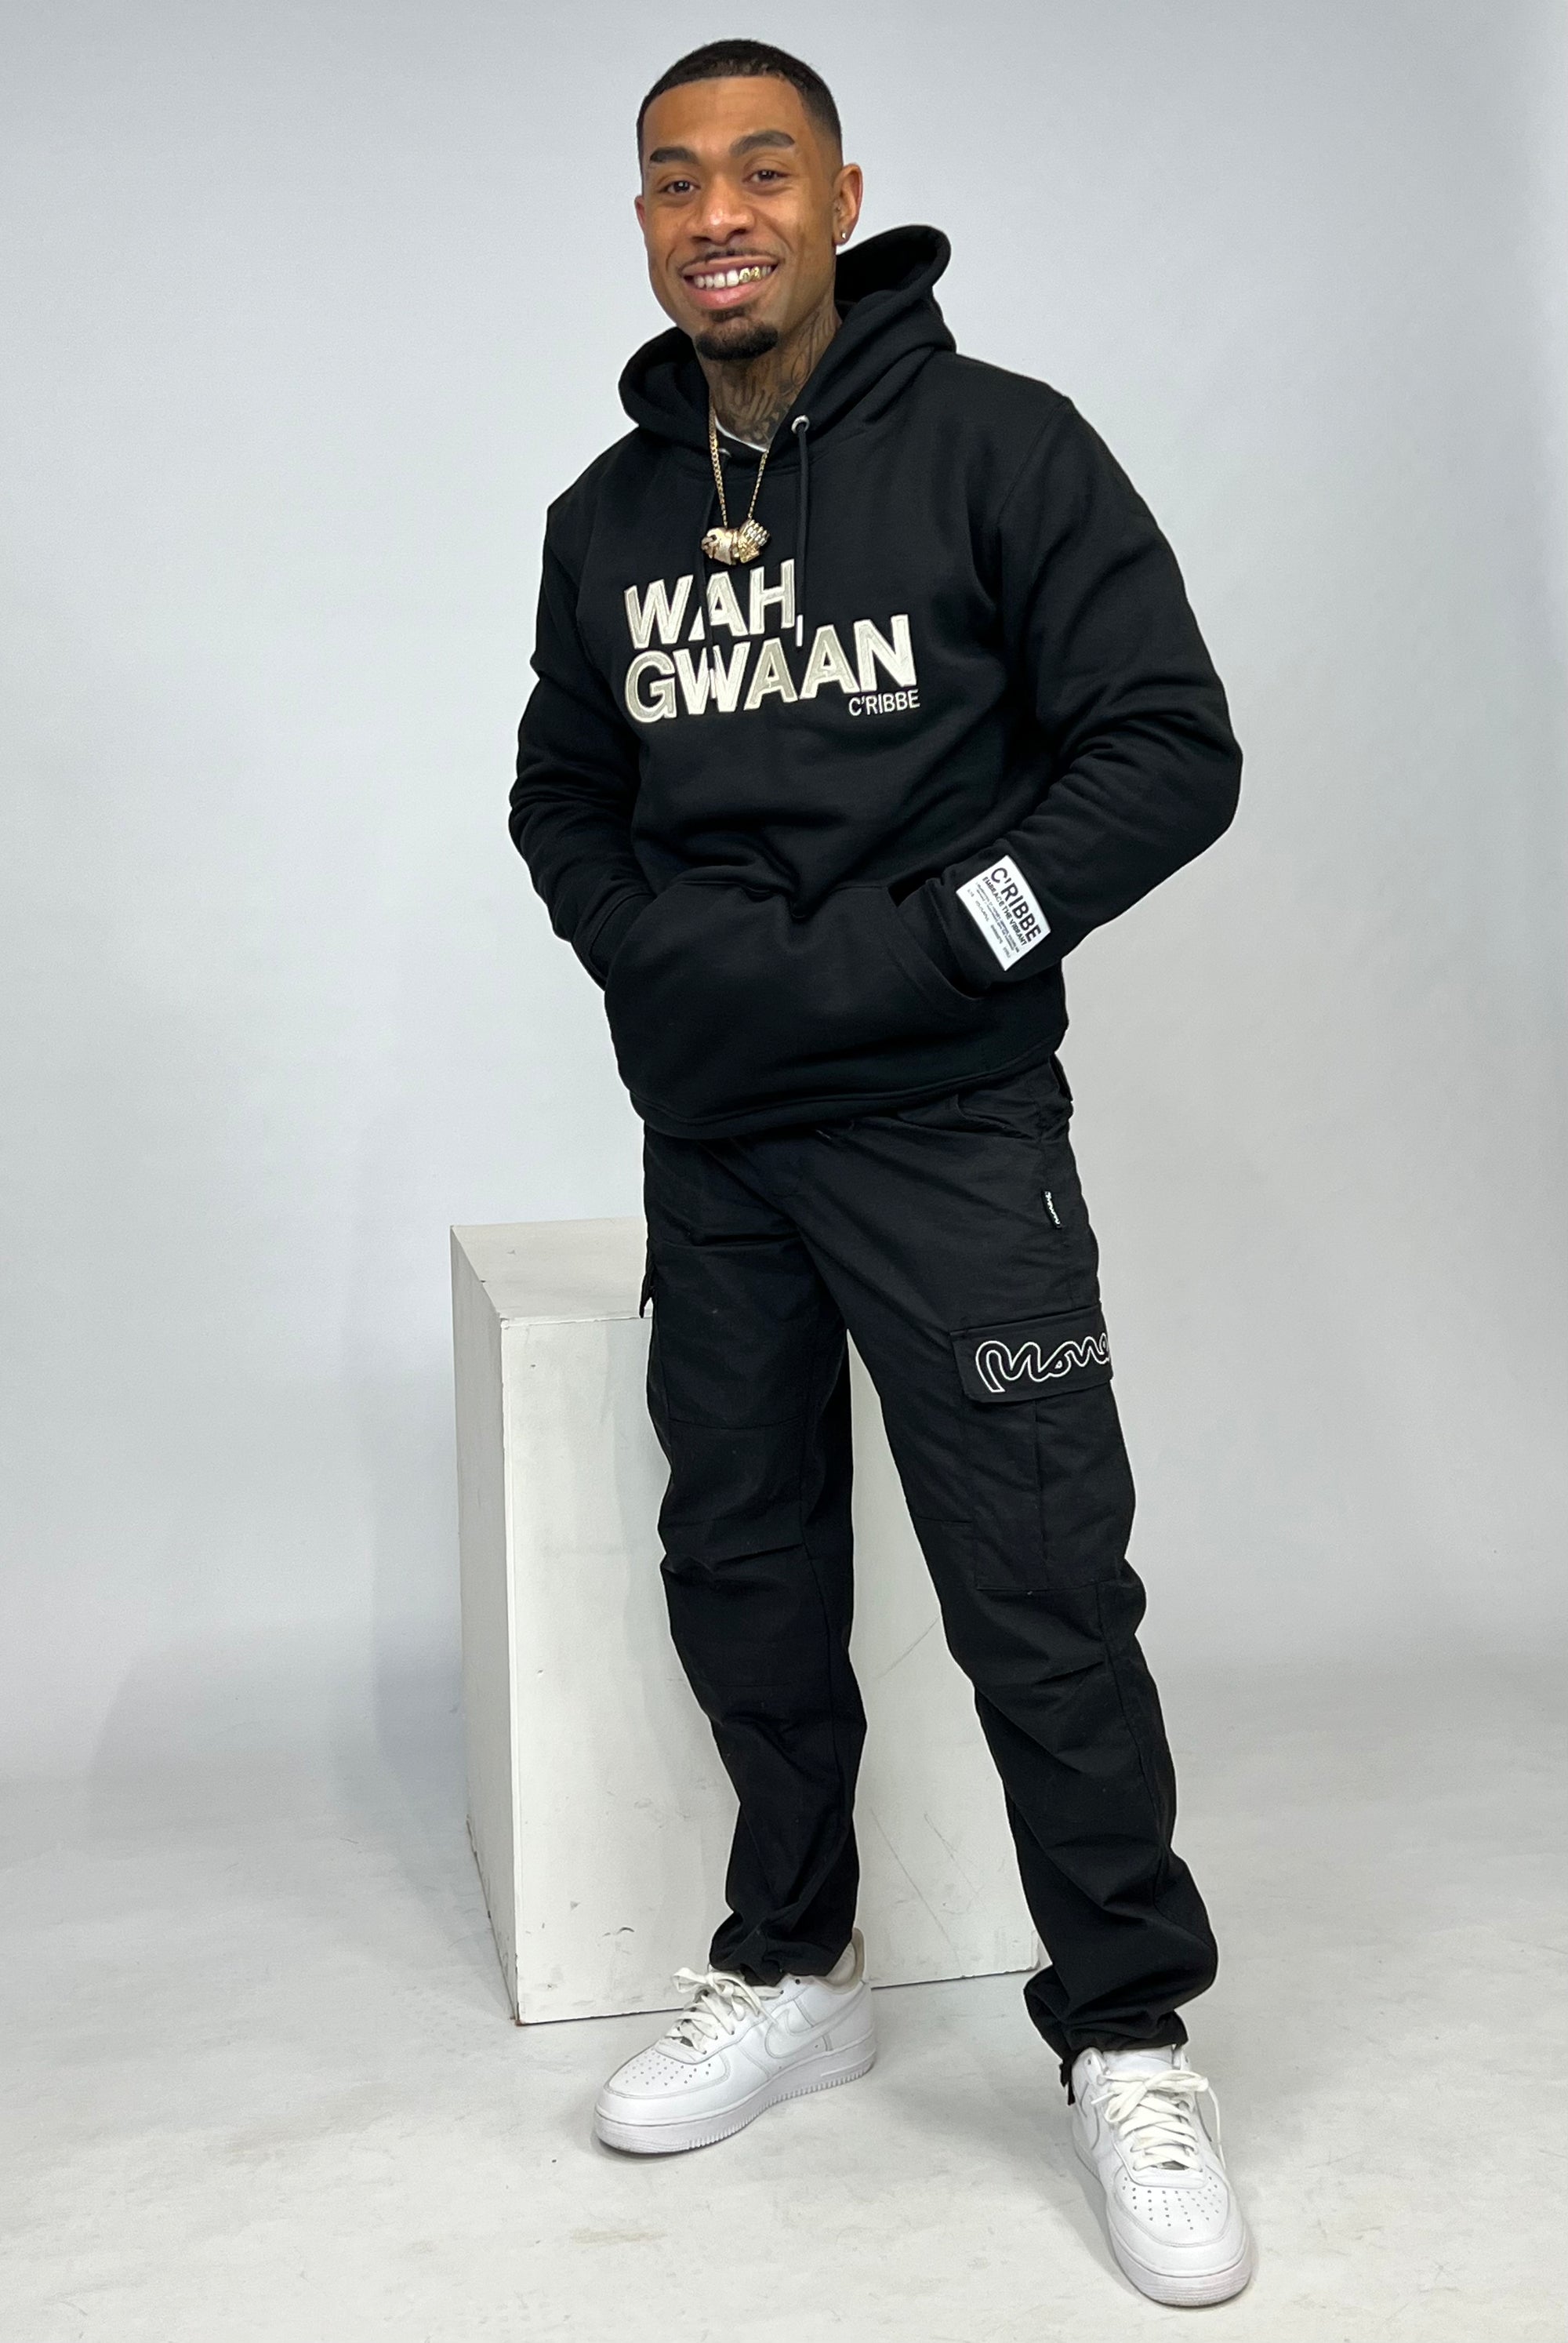 WAH GWAAN Embroidered Sweatshirt Hoodie, Black